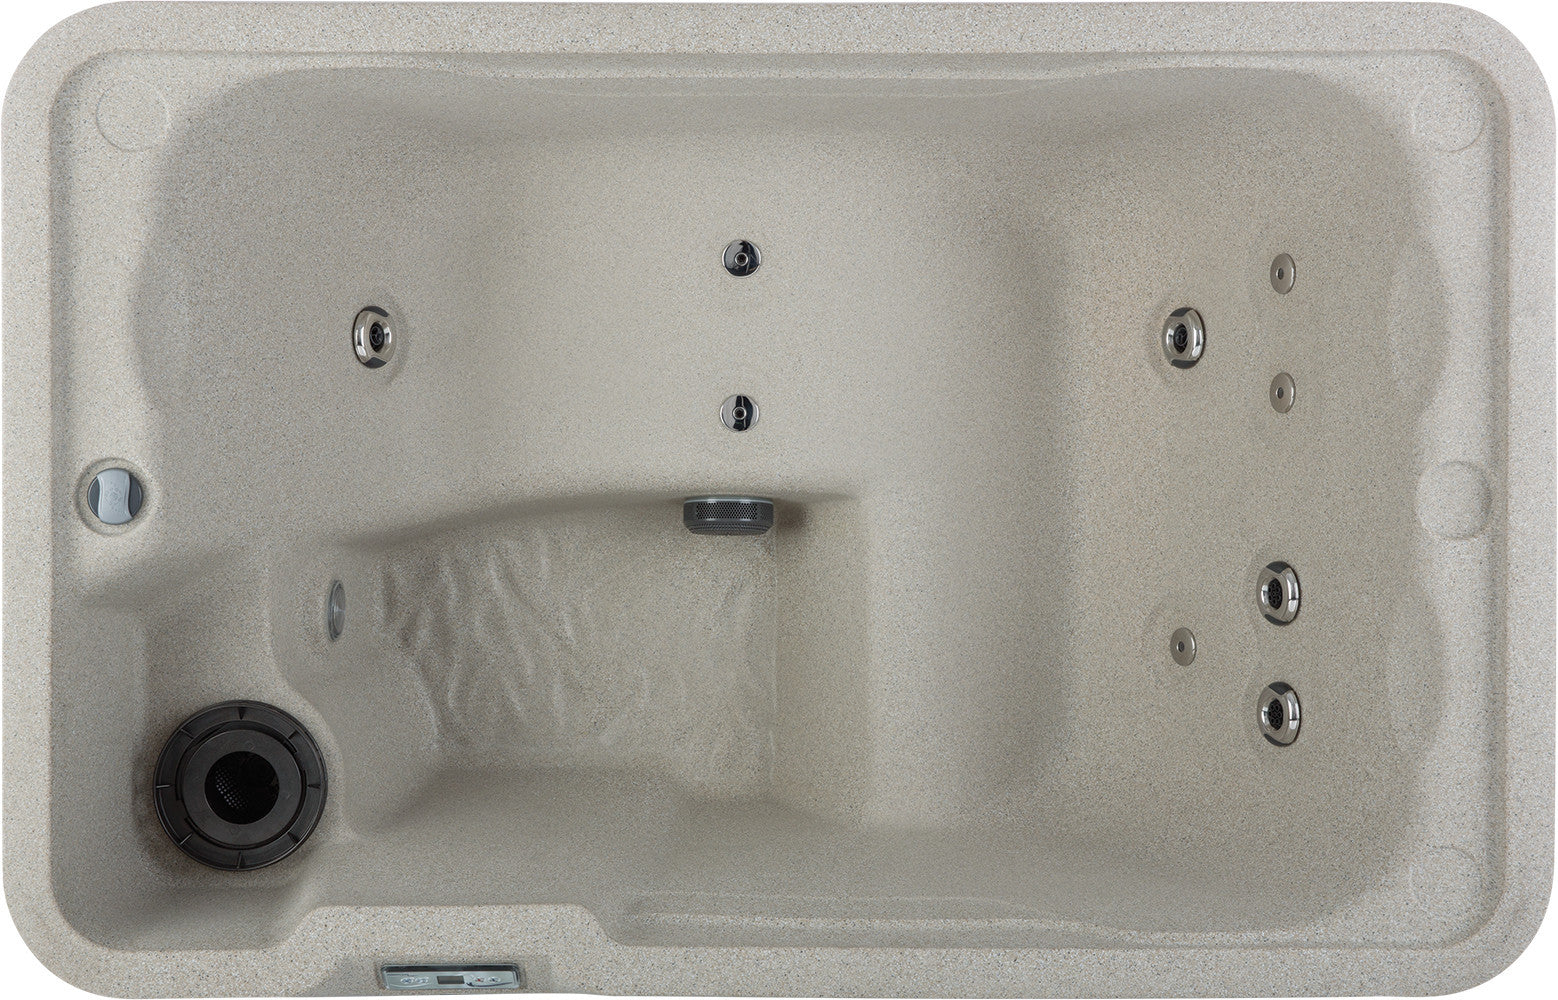 Mini Hot Tub by Freeflow Spas